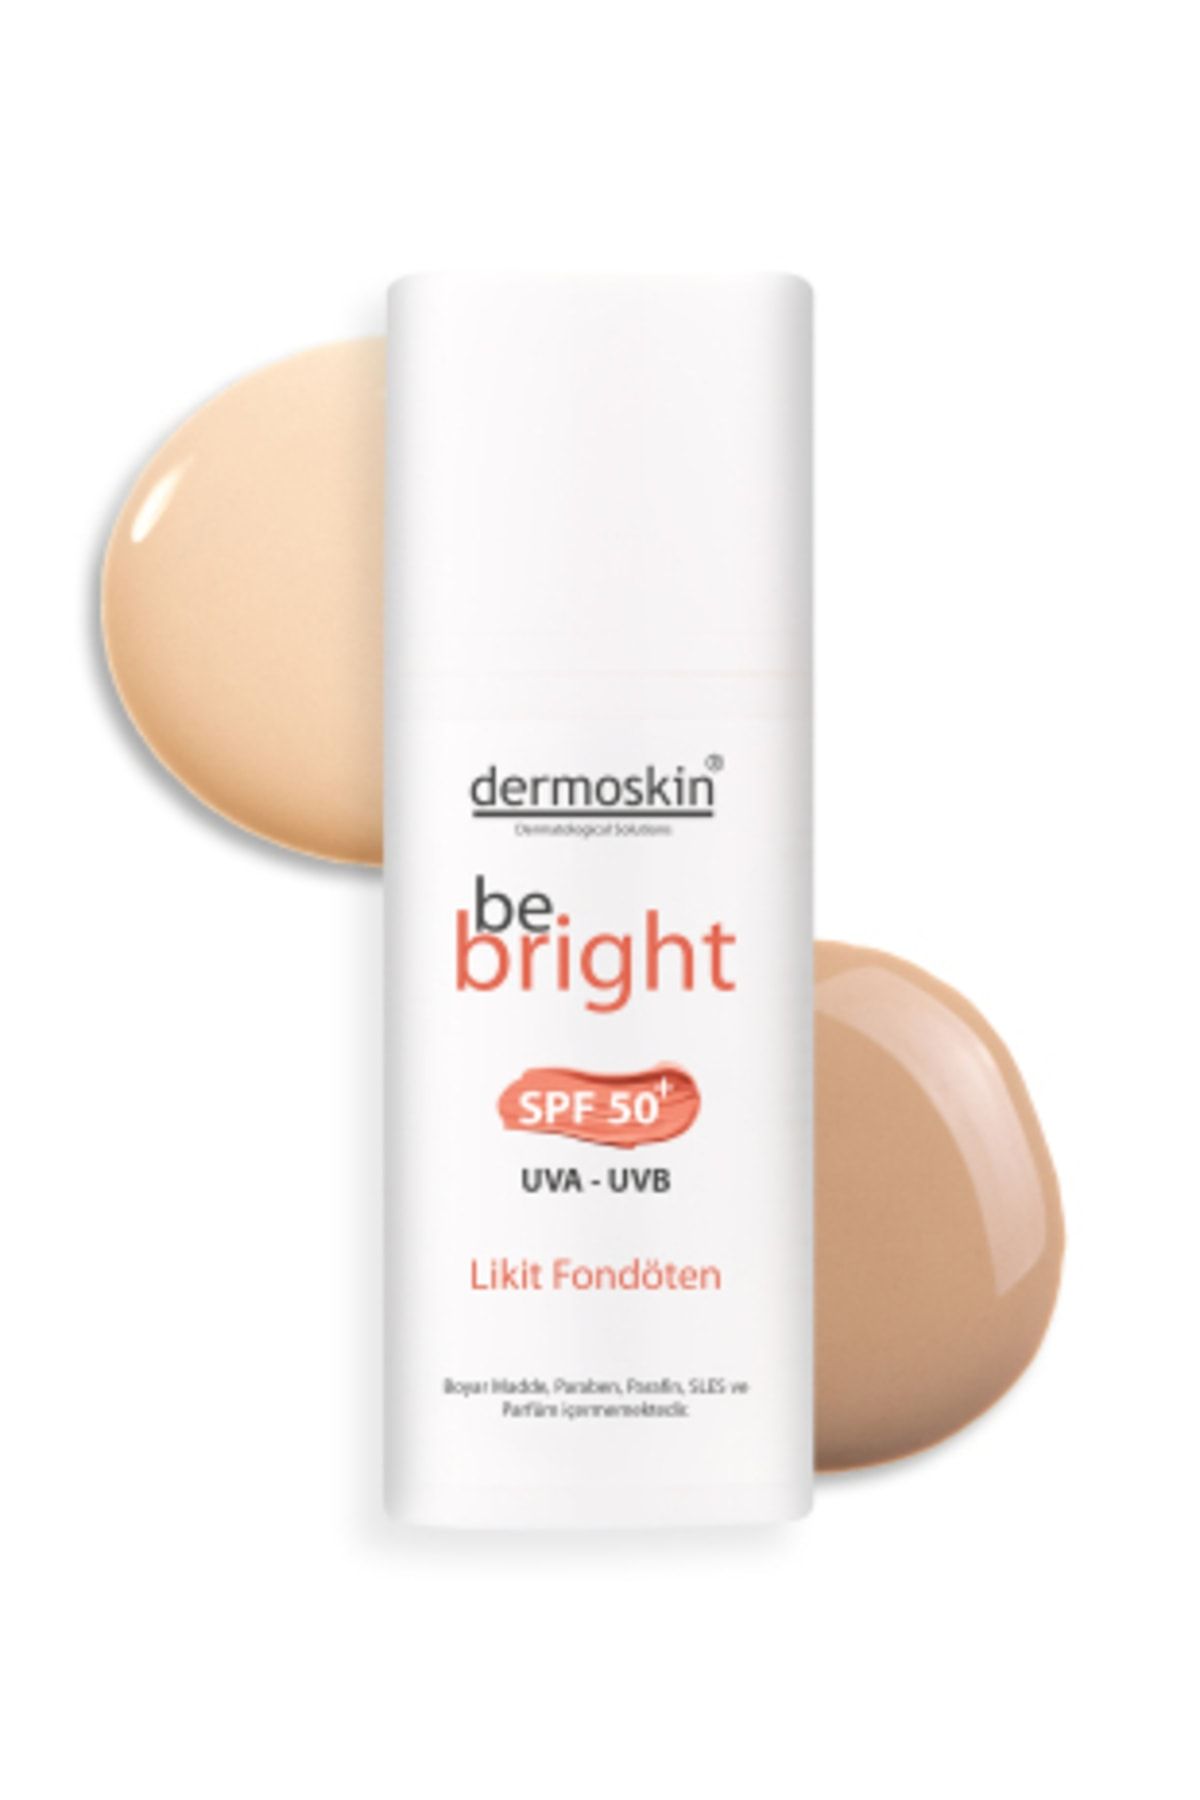 Dermoskin Be Bright Spf50+ Likit Fondöten 33ml - Light Fiyatı